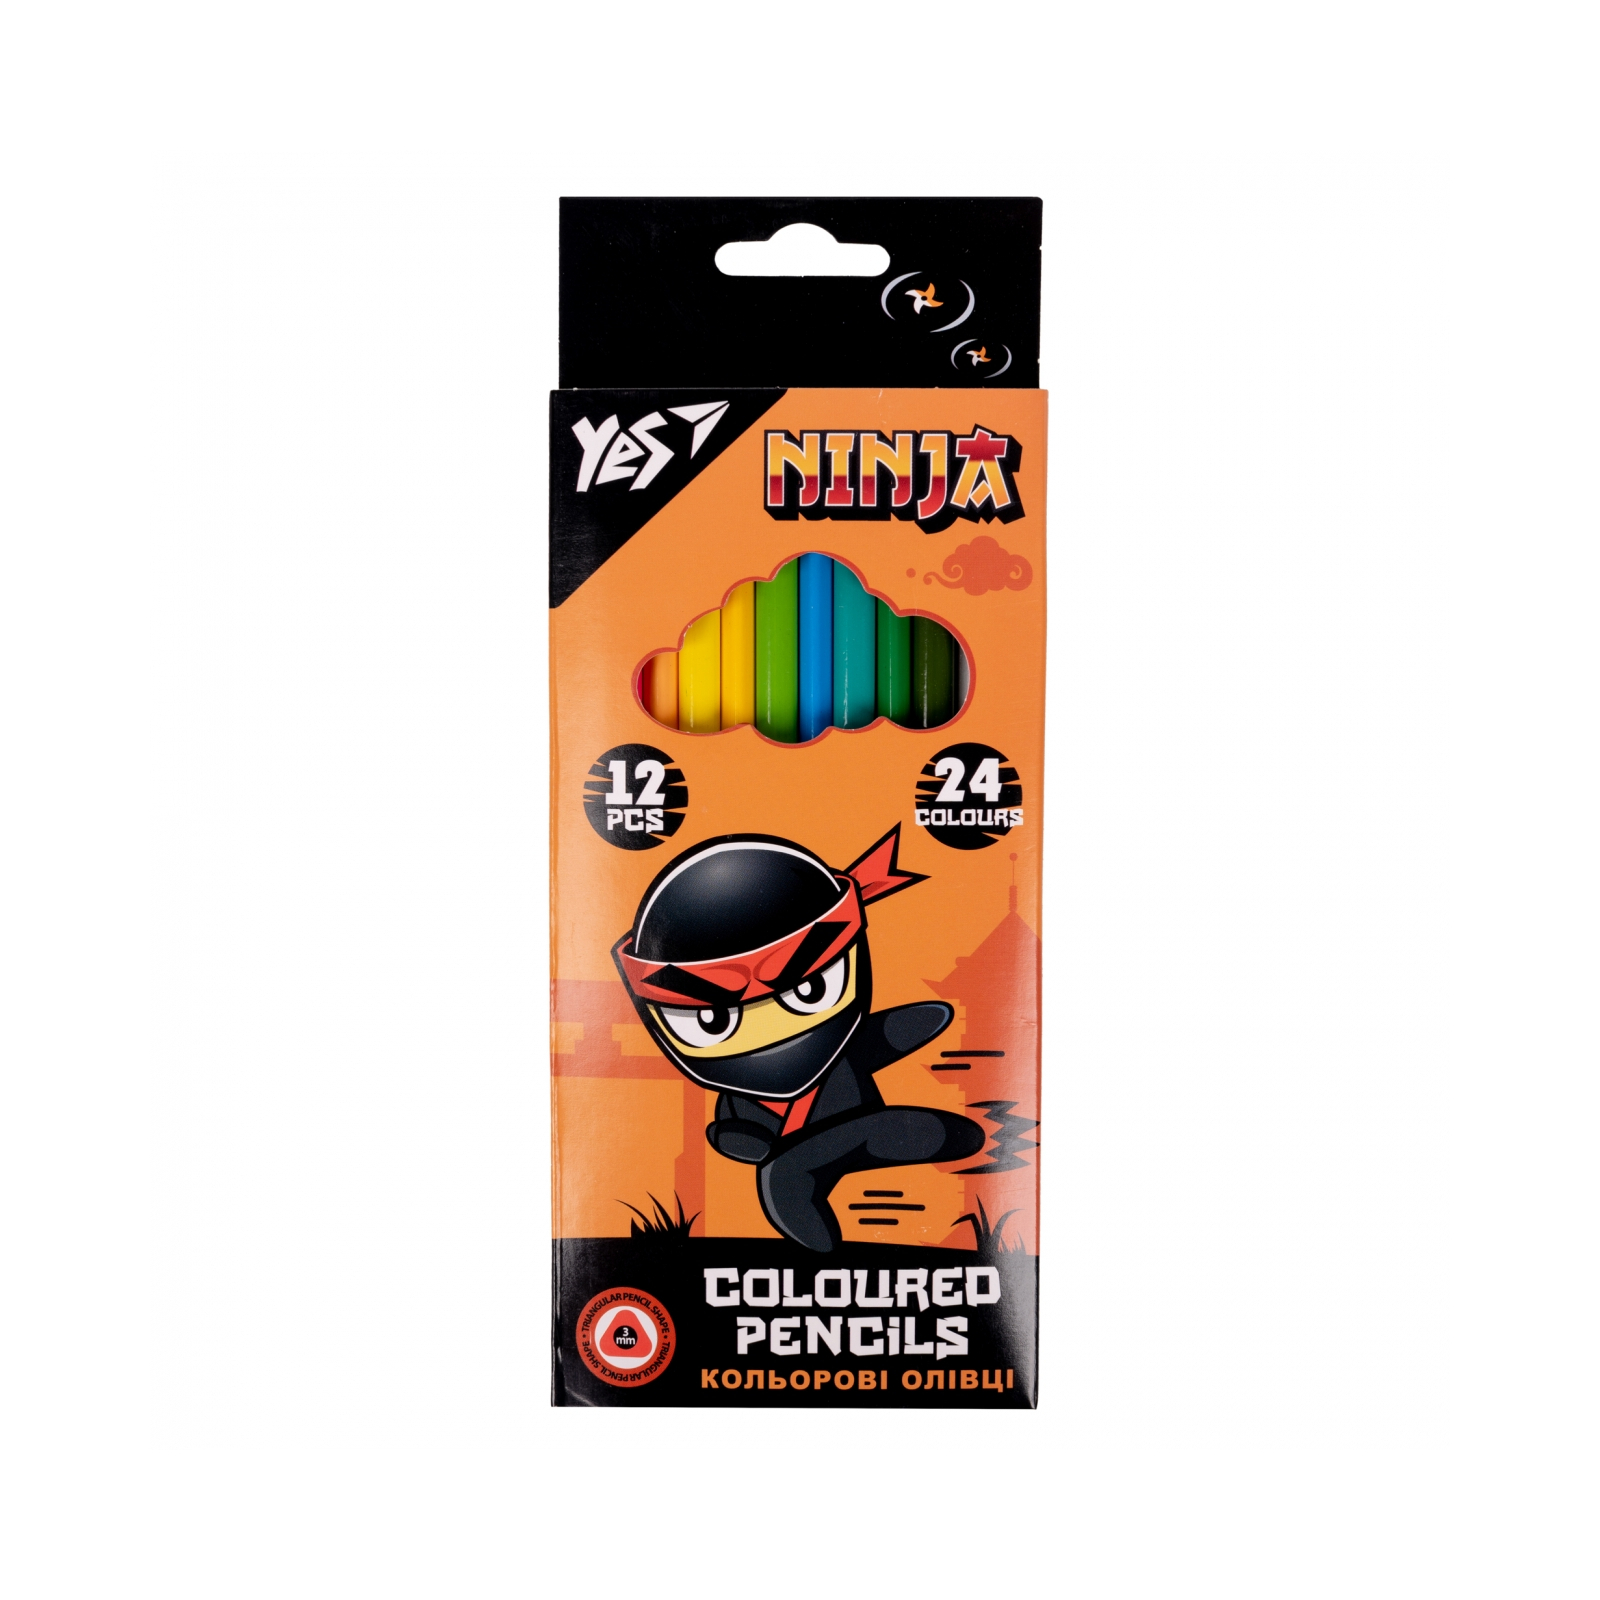 Олівці кольорові Yes Ninja двосторонні 12 шт. 24 кол. (290707)